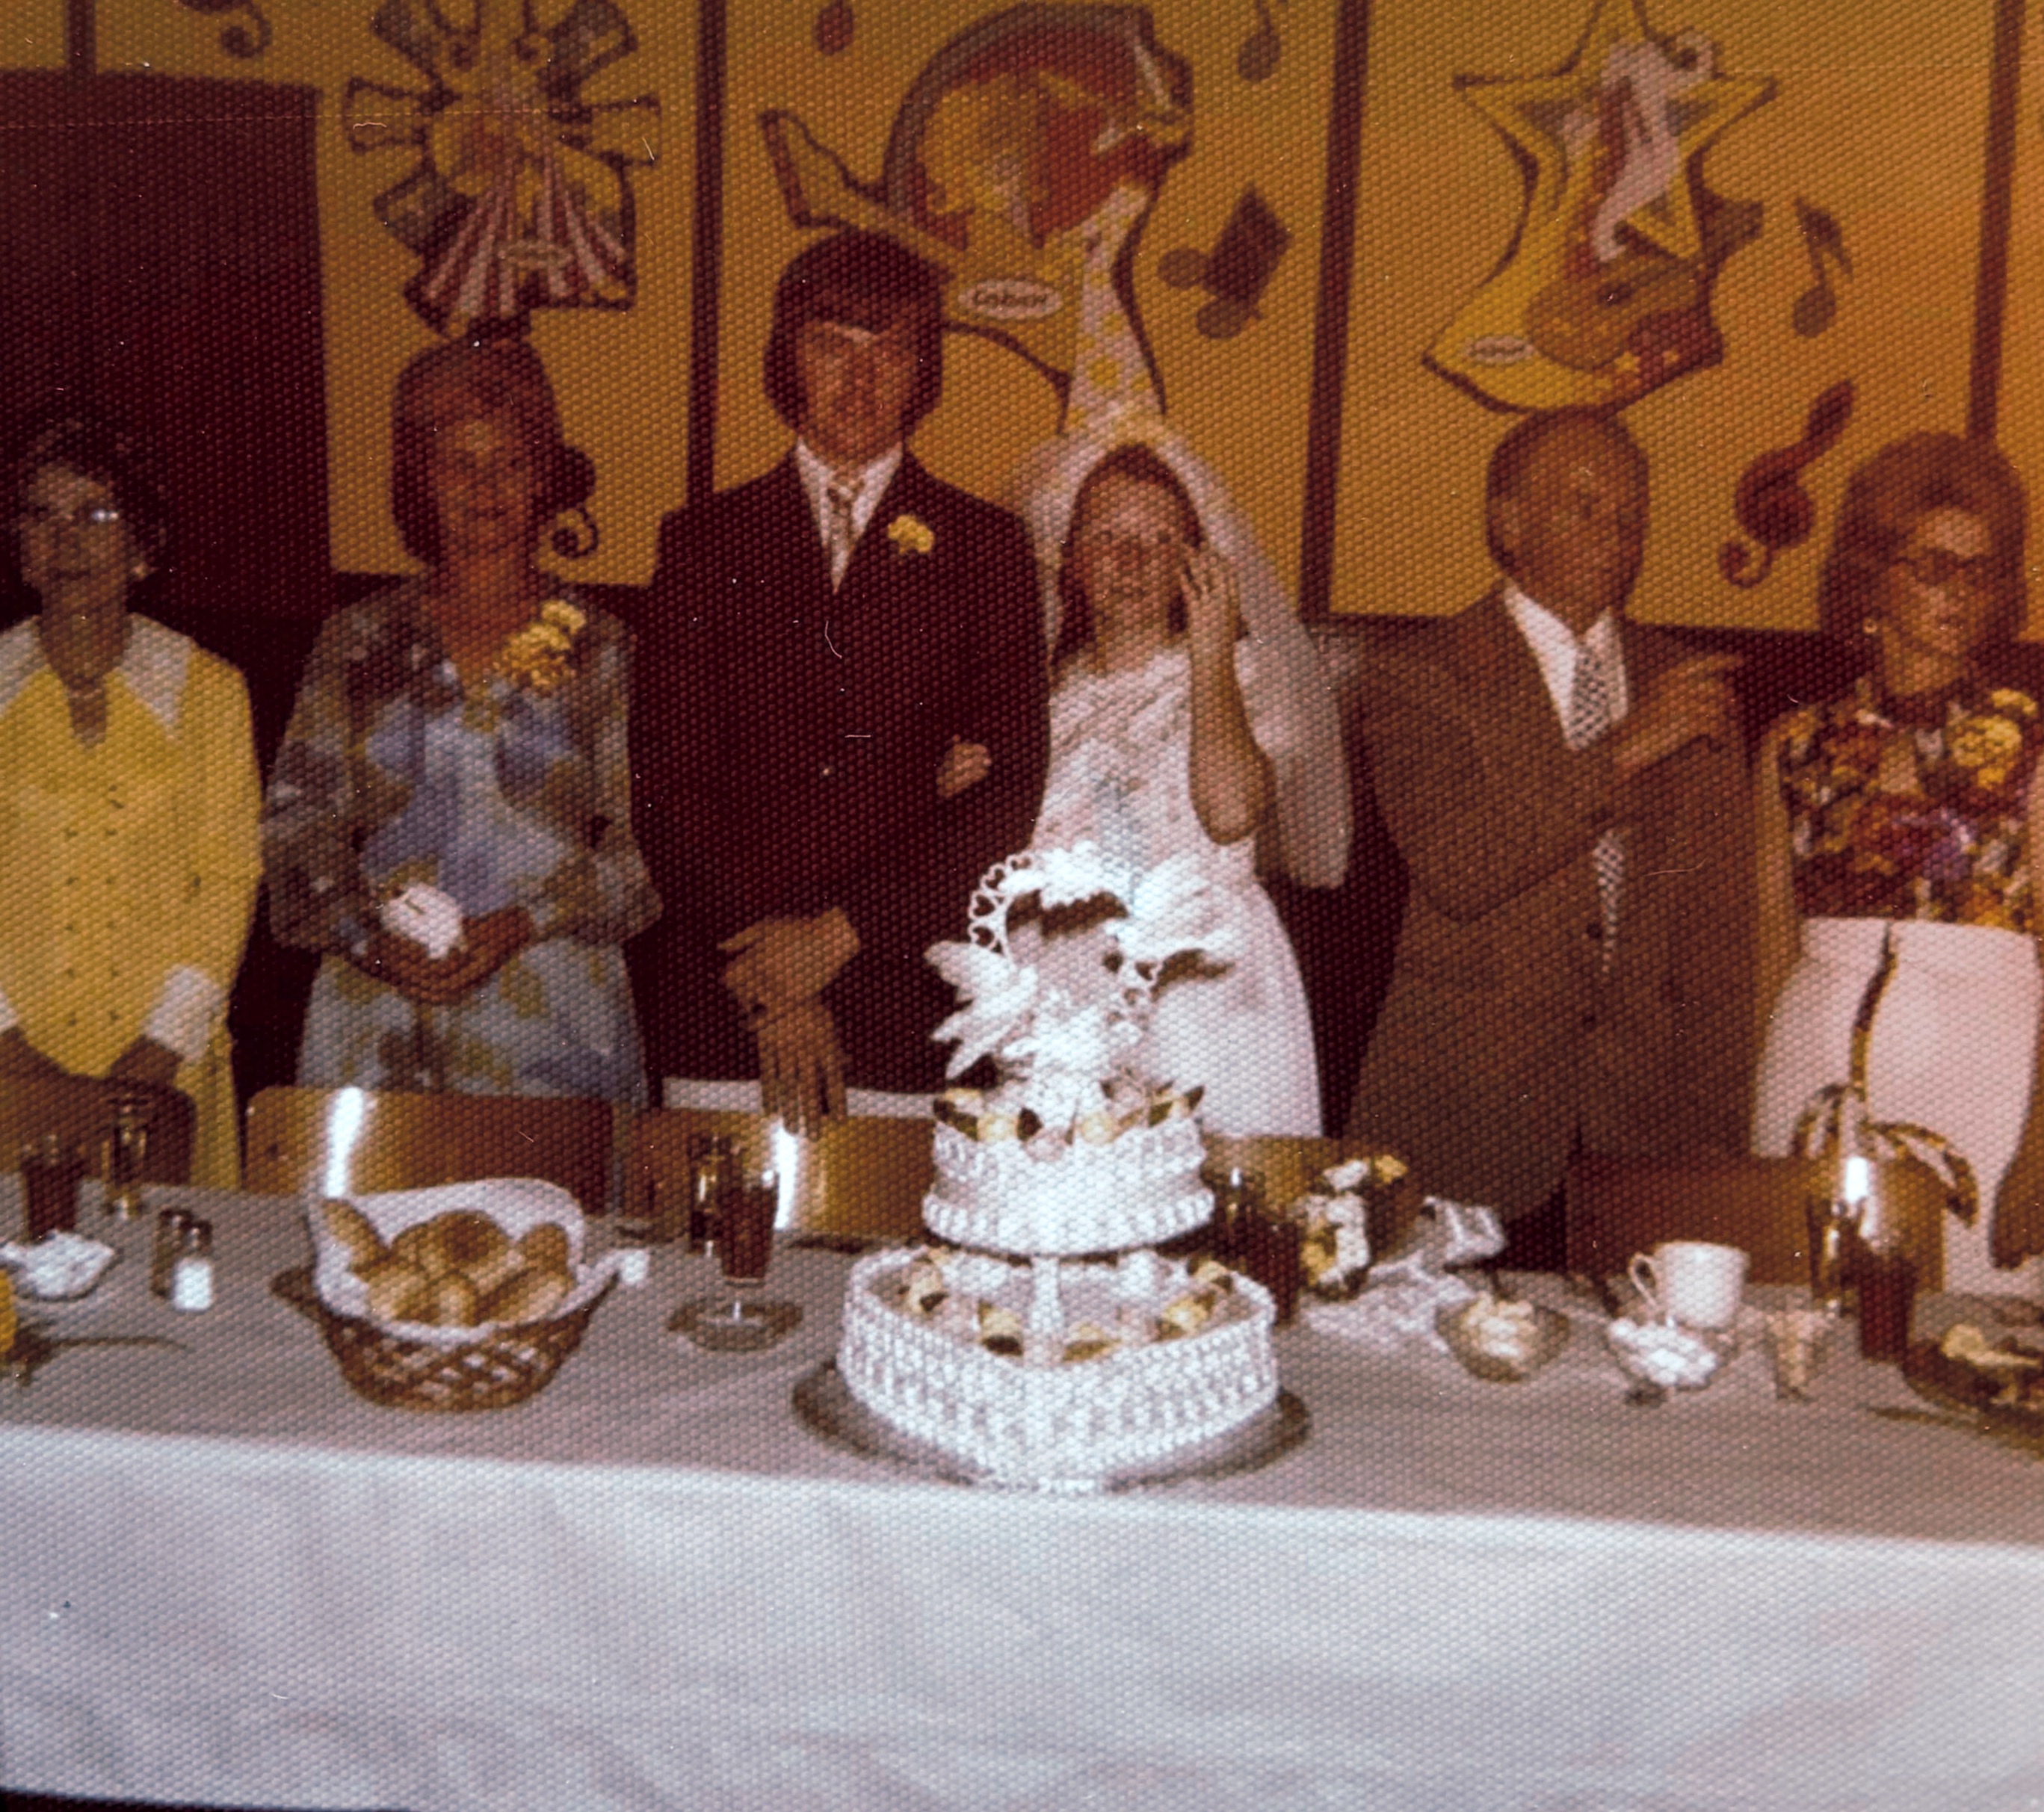 Mariage Daniel et Nicole le 30 juin 1973